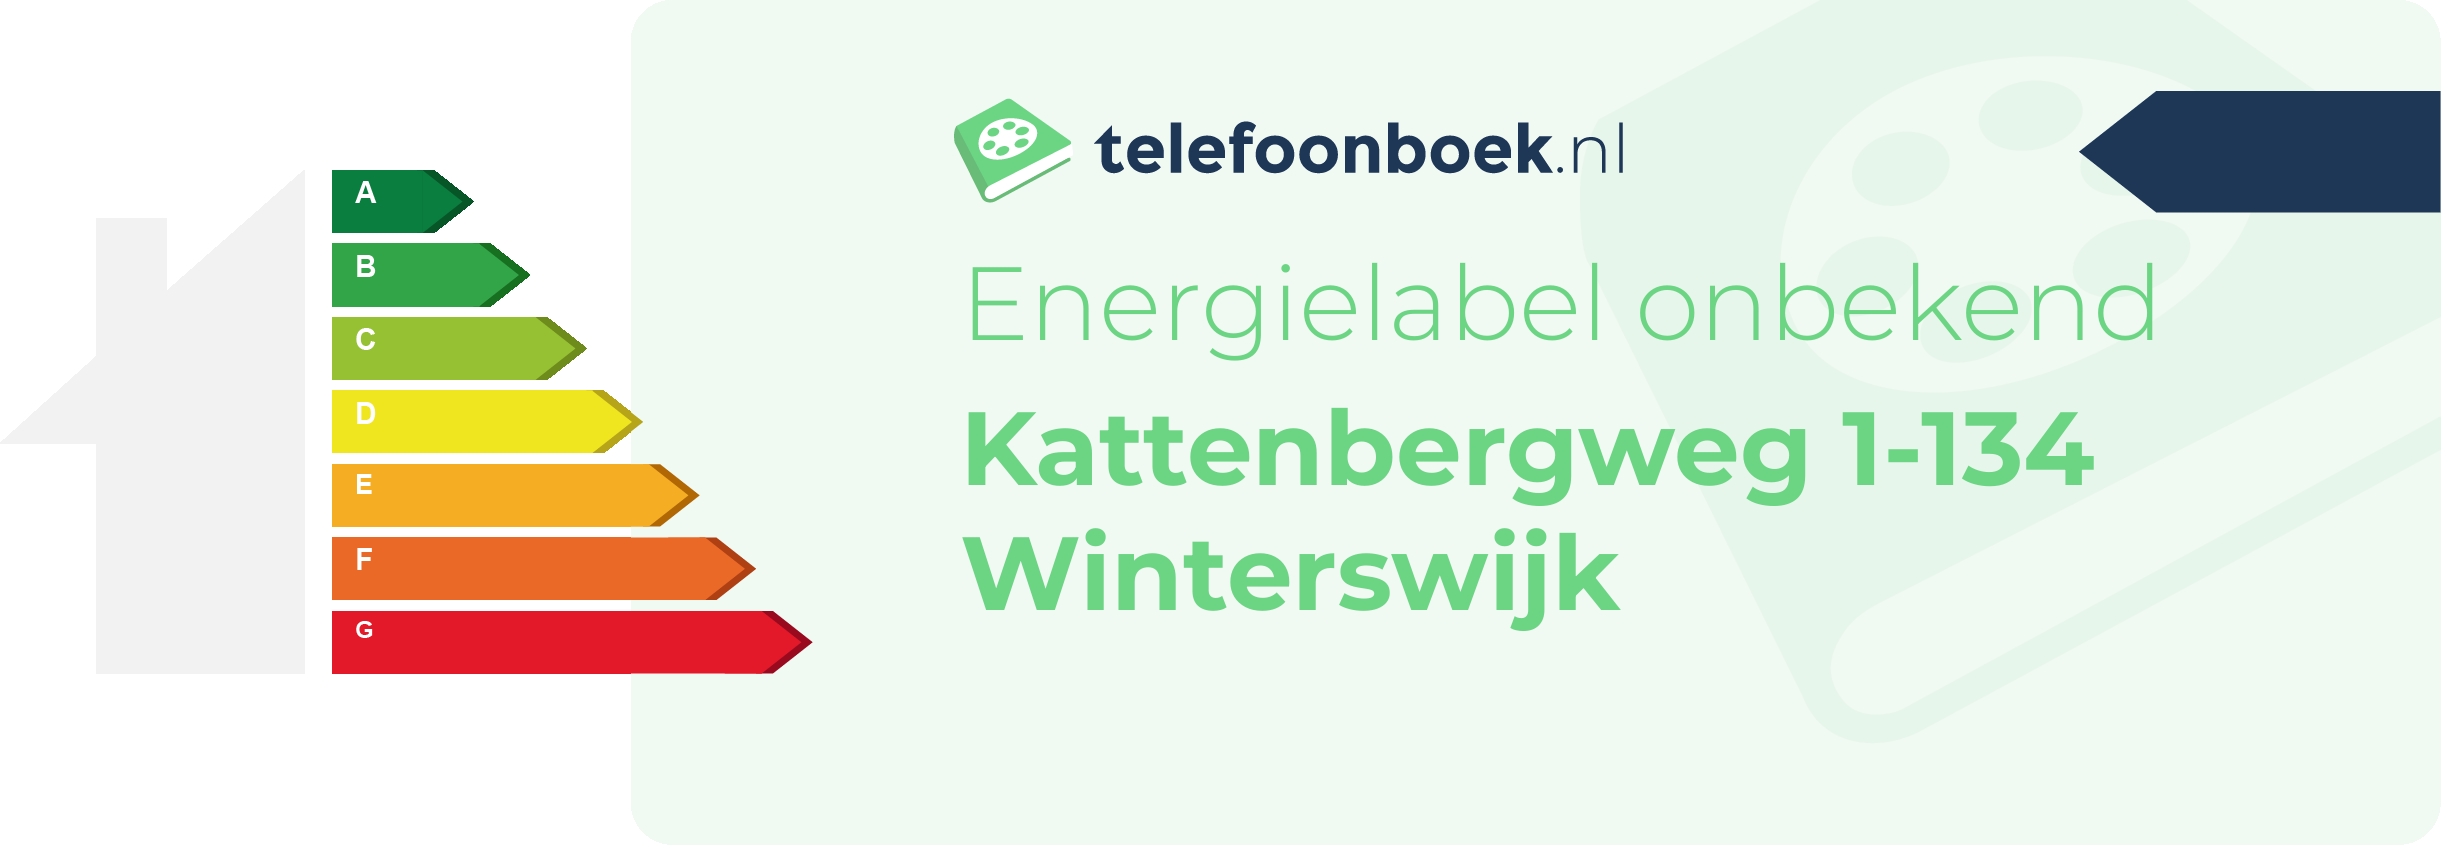 Energielabel Kattenbergweg 1-134 Winterswijk